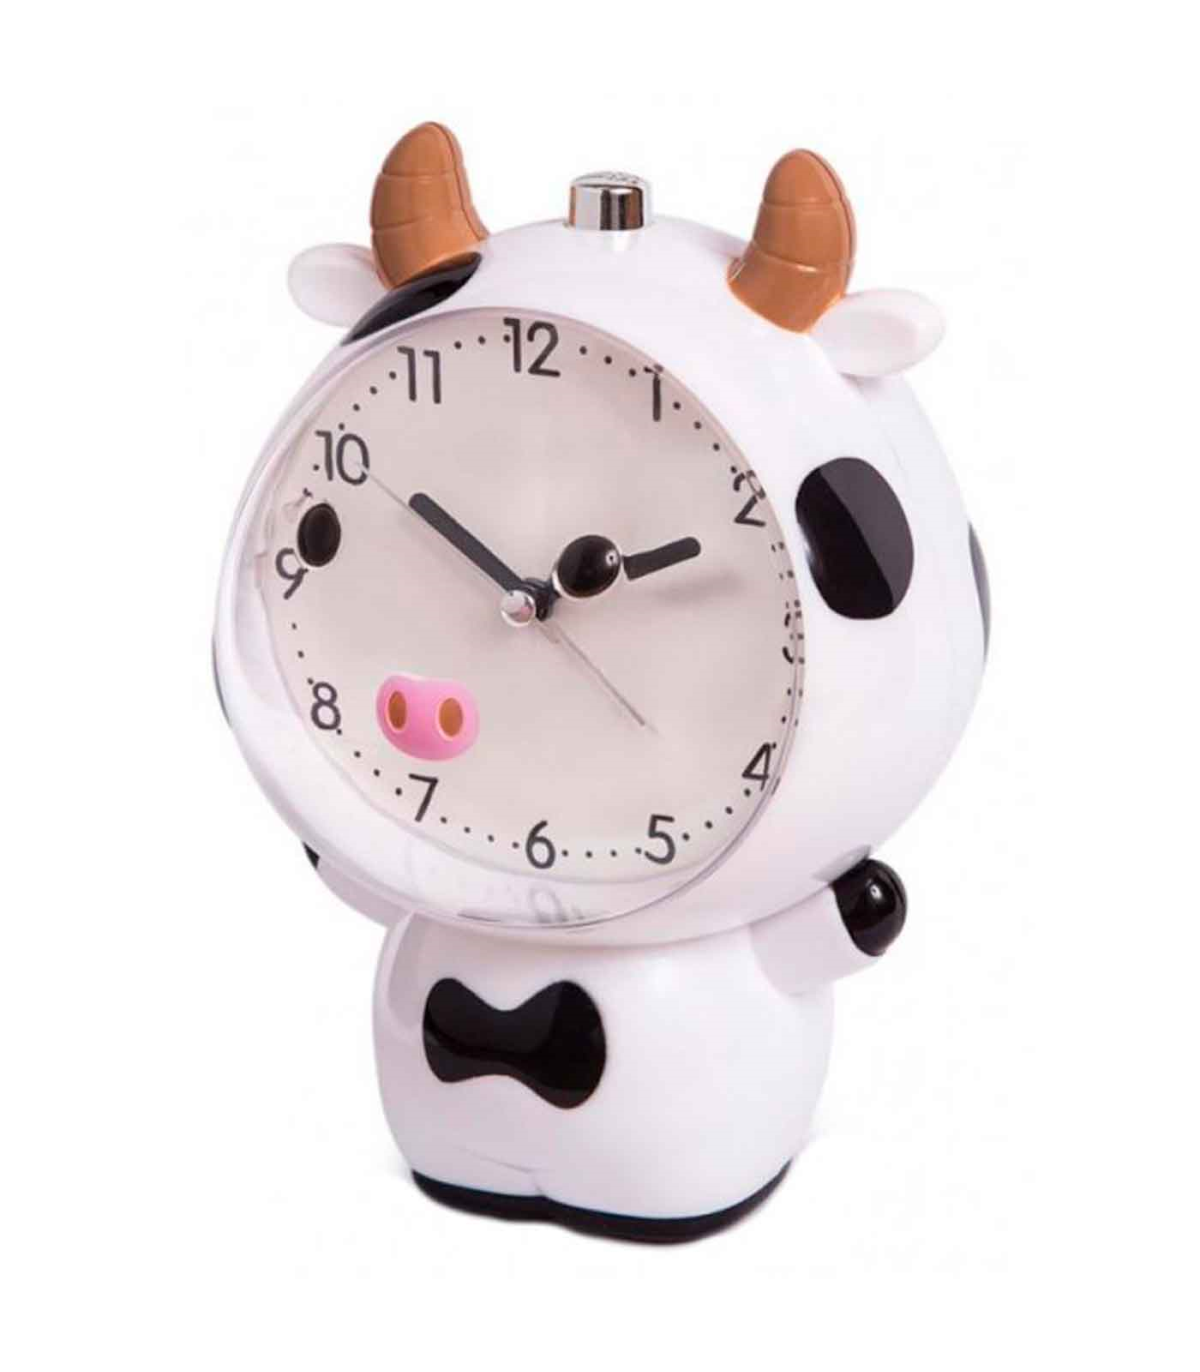 Tradineur - Reloj infantil analógico, despertador con diseño de vaca -  Multifunciones - Fabricado en plástico resistente - 20 x